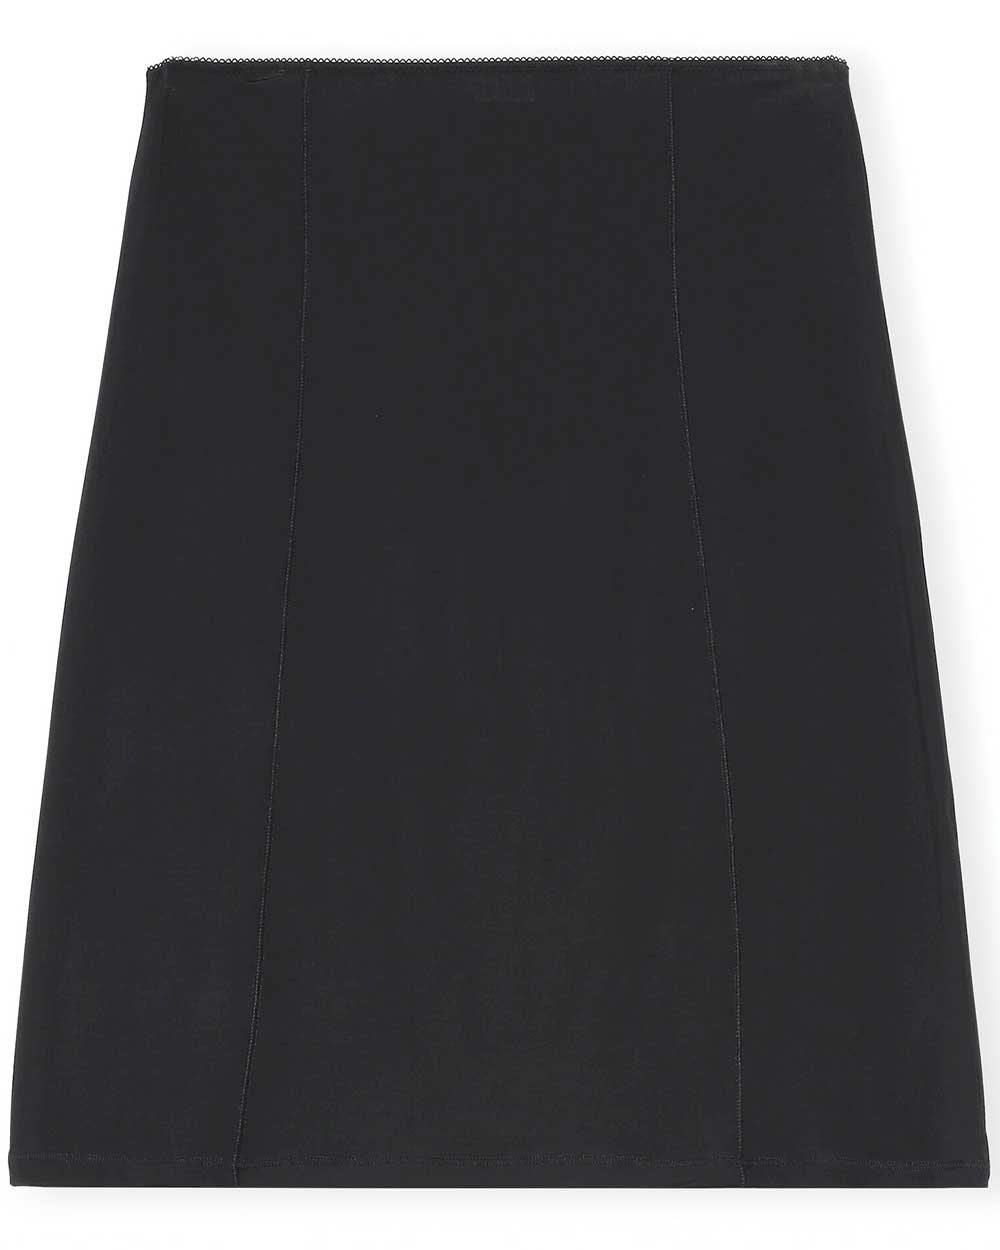 Black Underwear Slip Skirt – Stanley Korshak